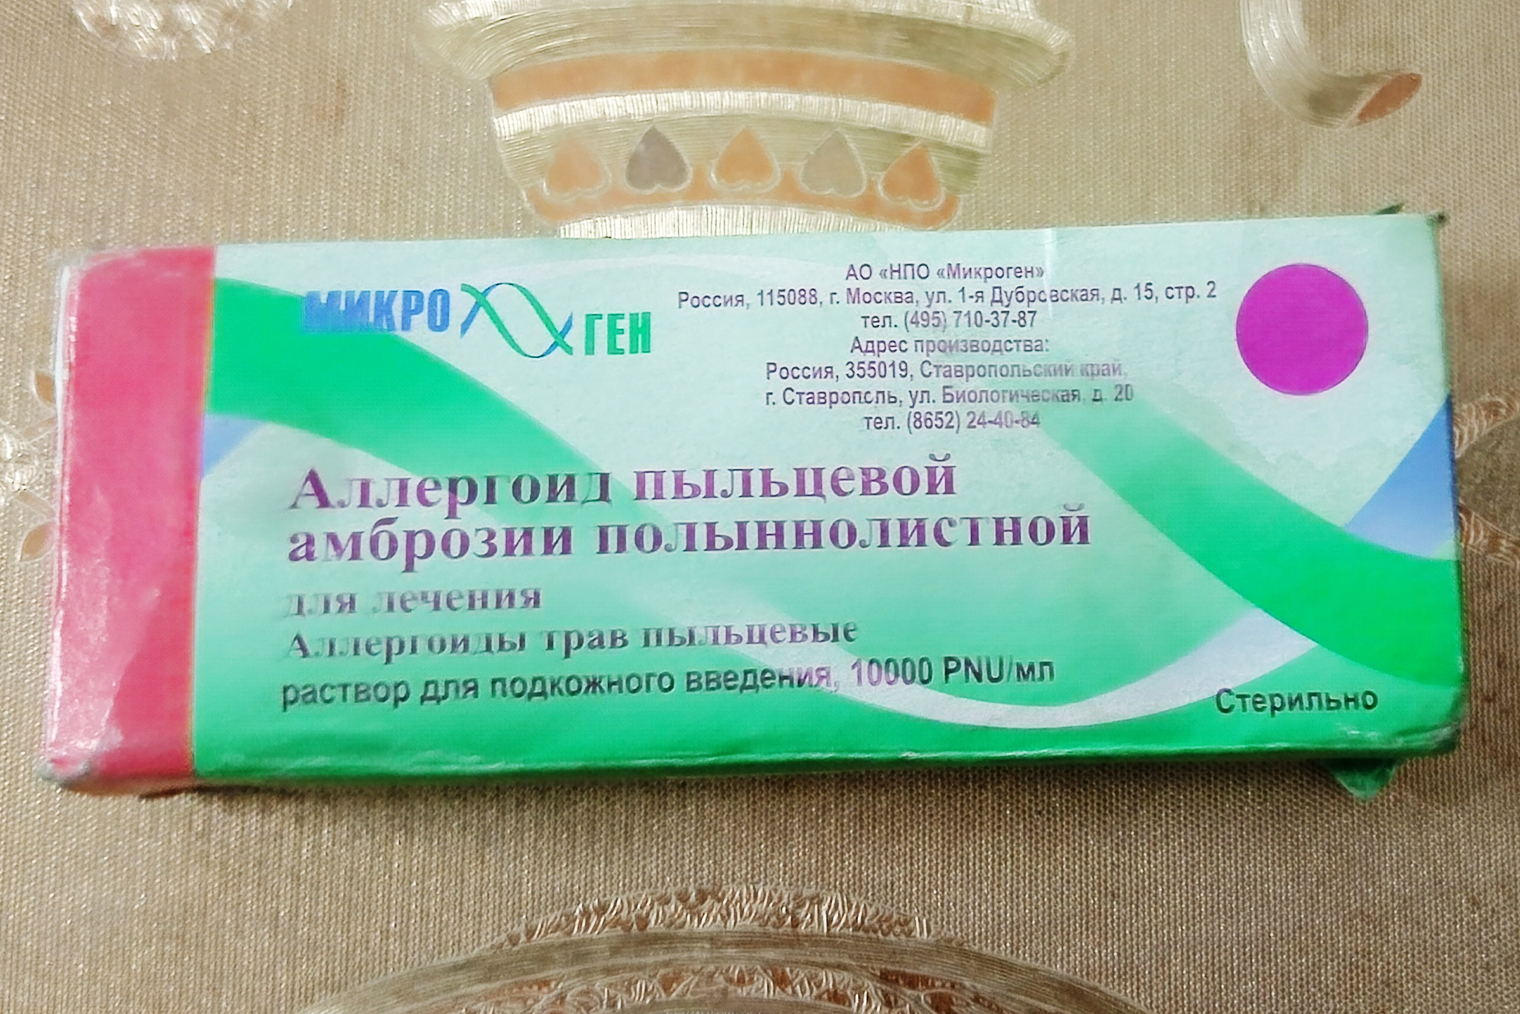 Для АСИТ покупаю российский препарат